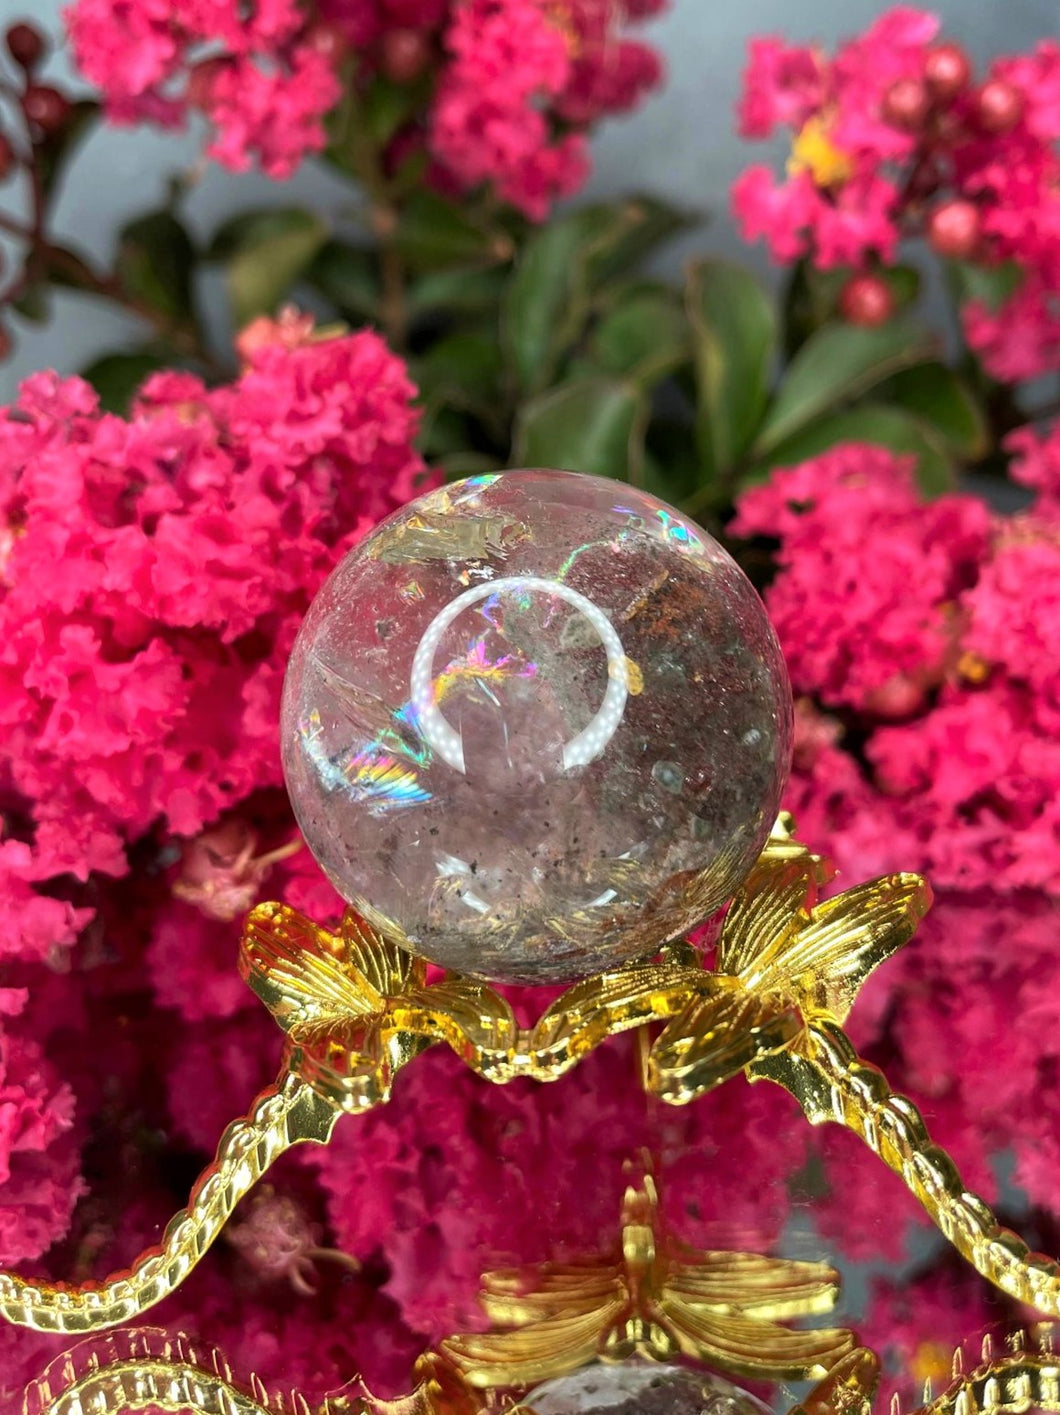 Garden Quartz Lodolite Crystal Sphere With Rainbows